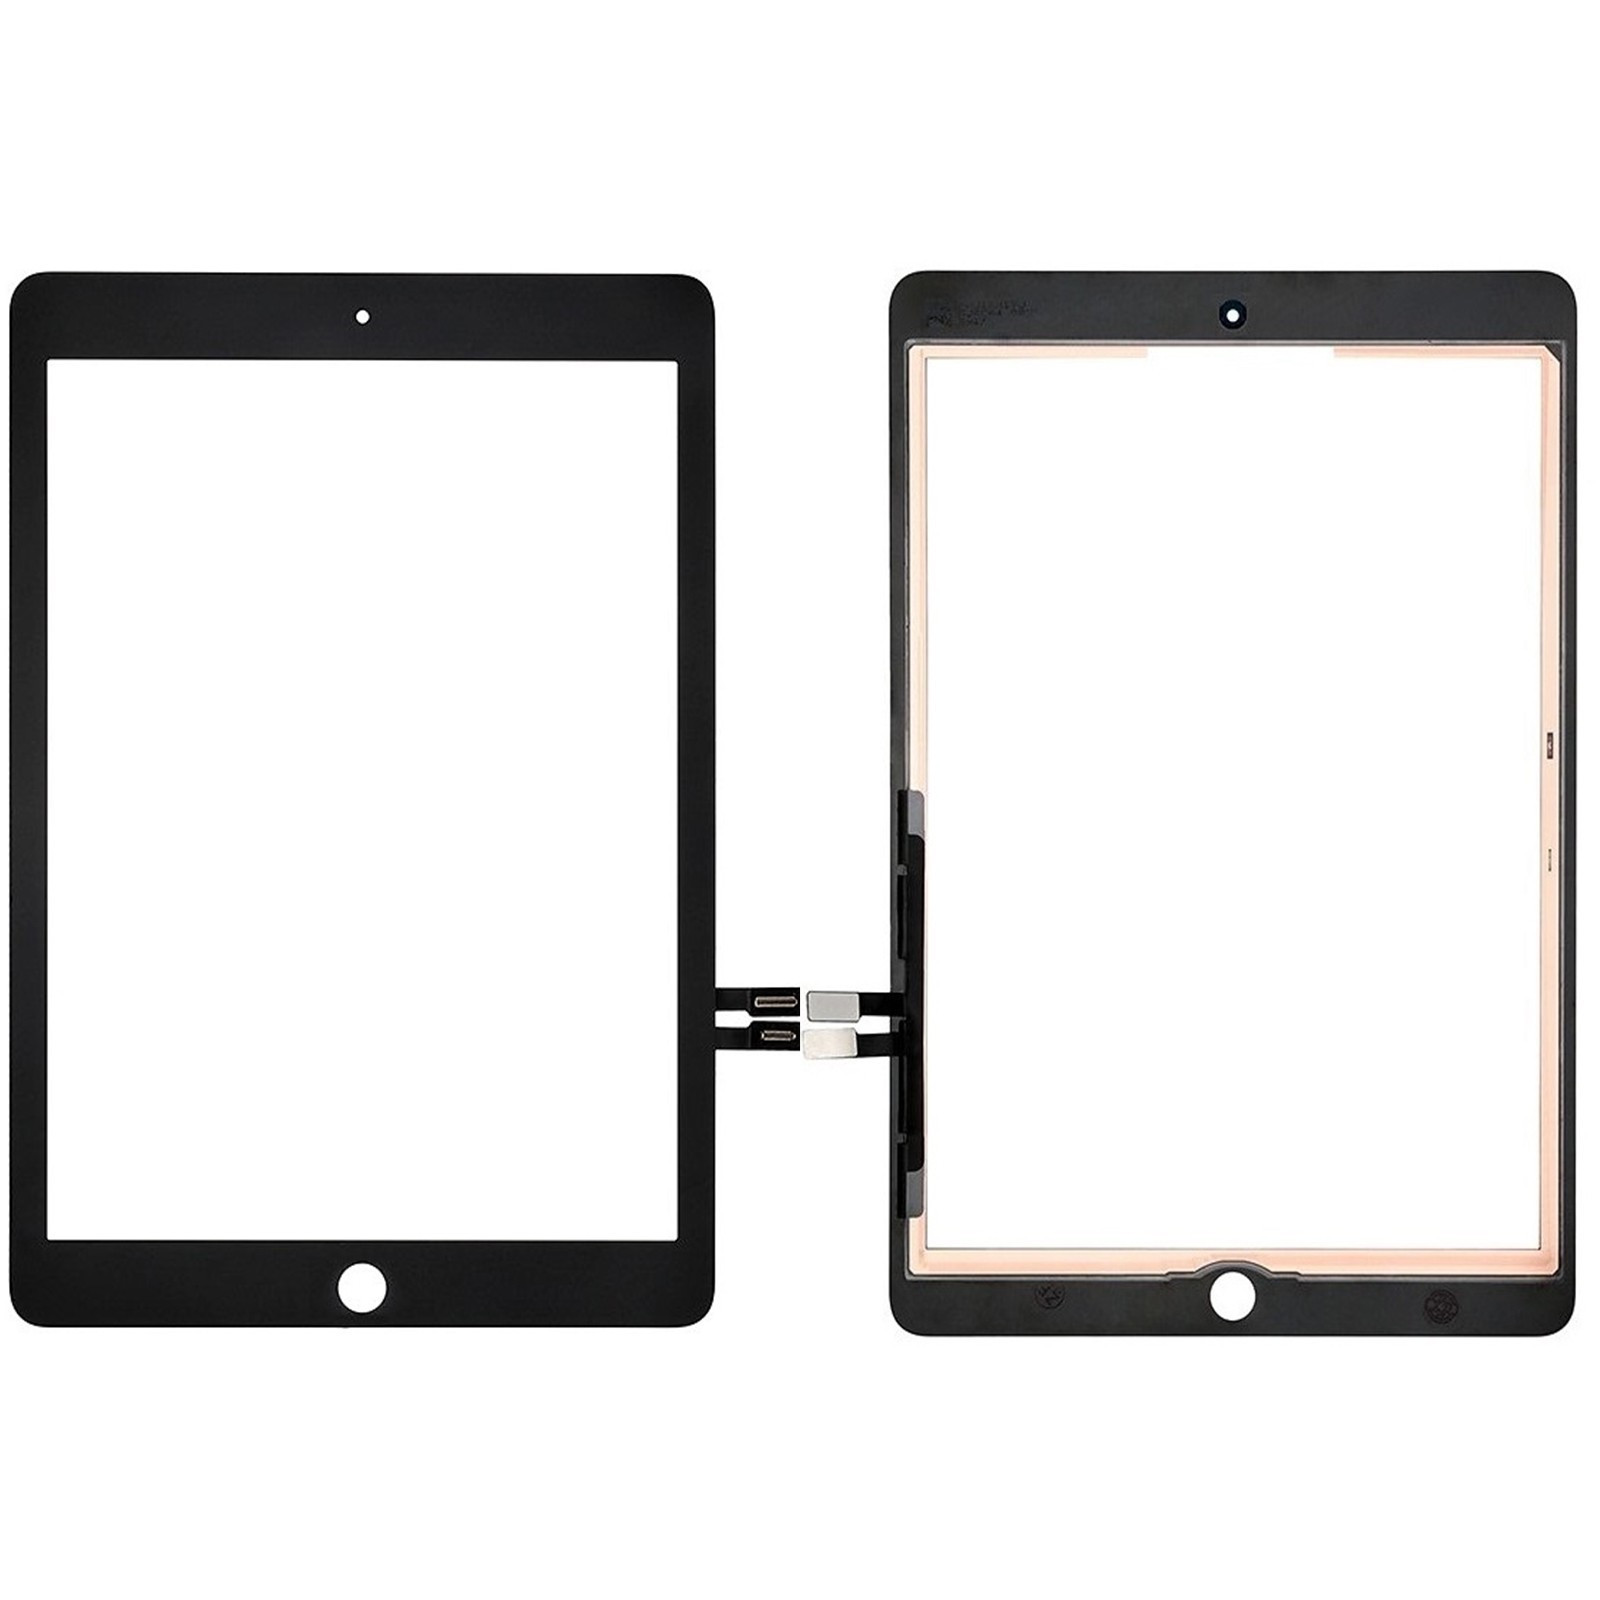 NUOVO iPad Mini 1 2 3 LCD Display Digitalizzatore Touch Screen Lente in Vetro Bianco Nero 